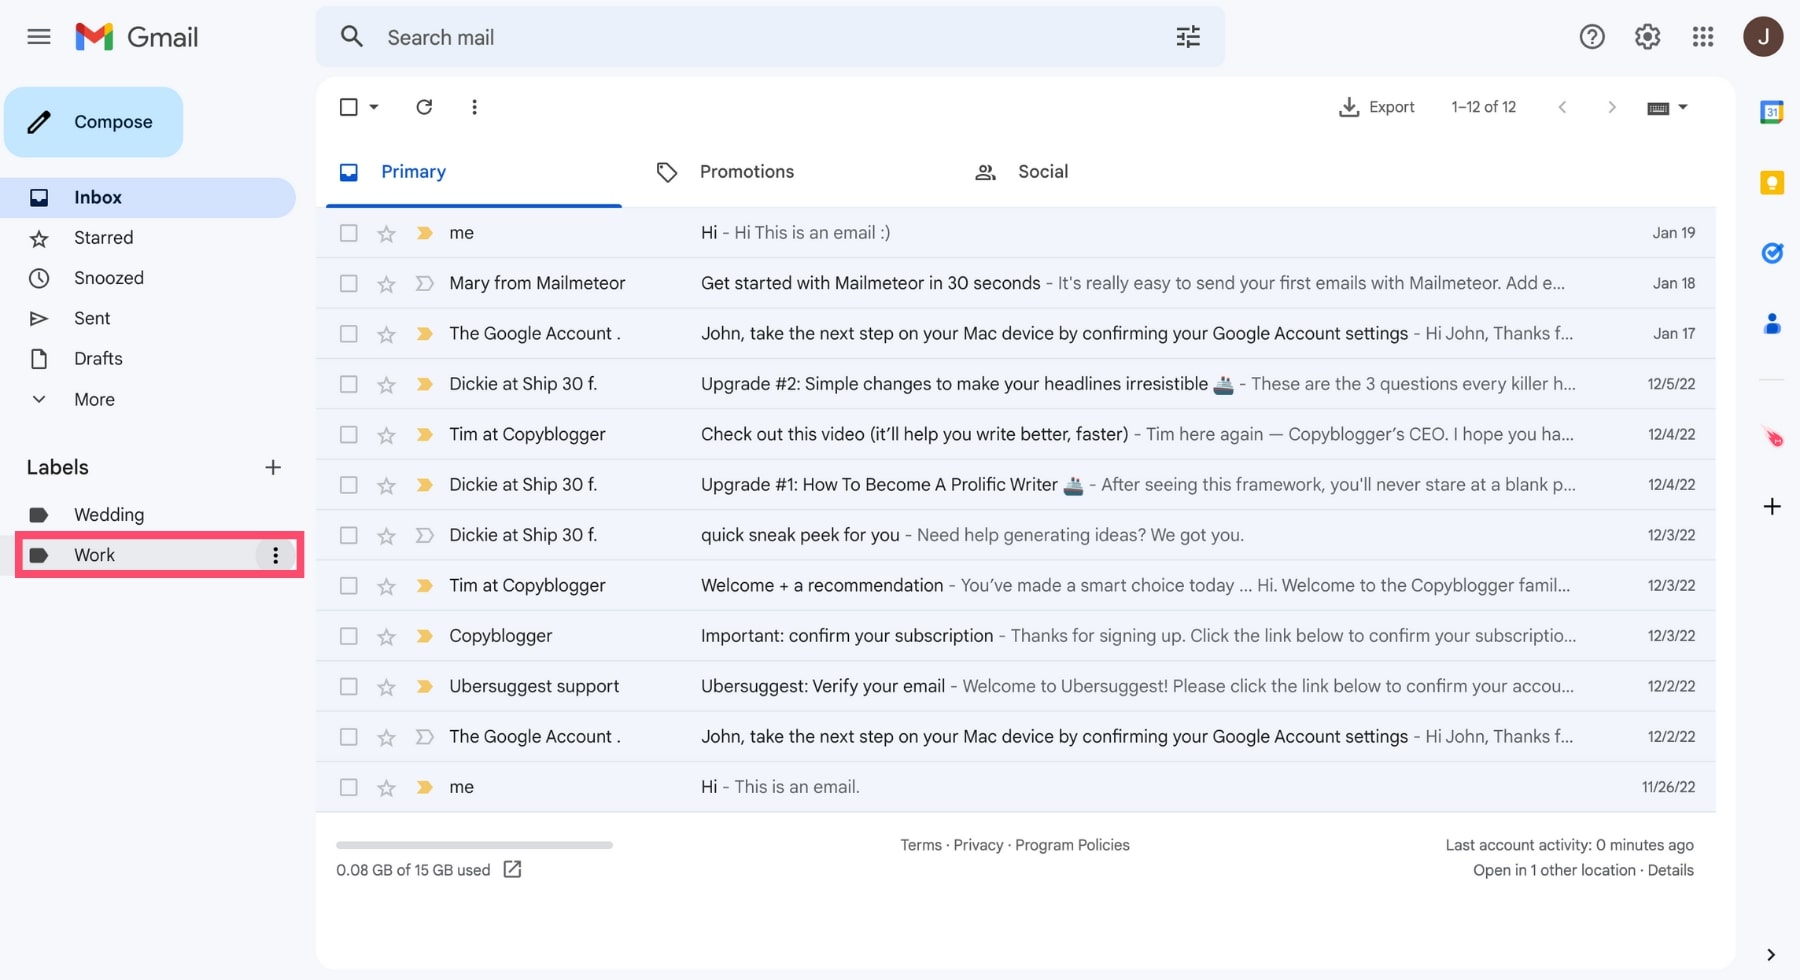 Find Gmail folders